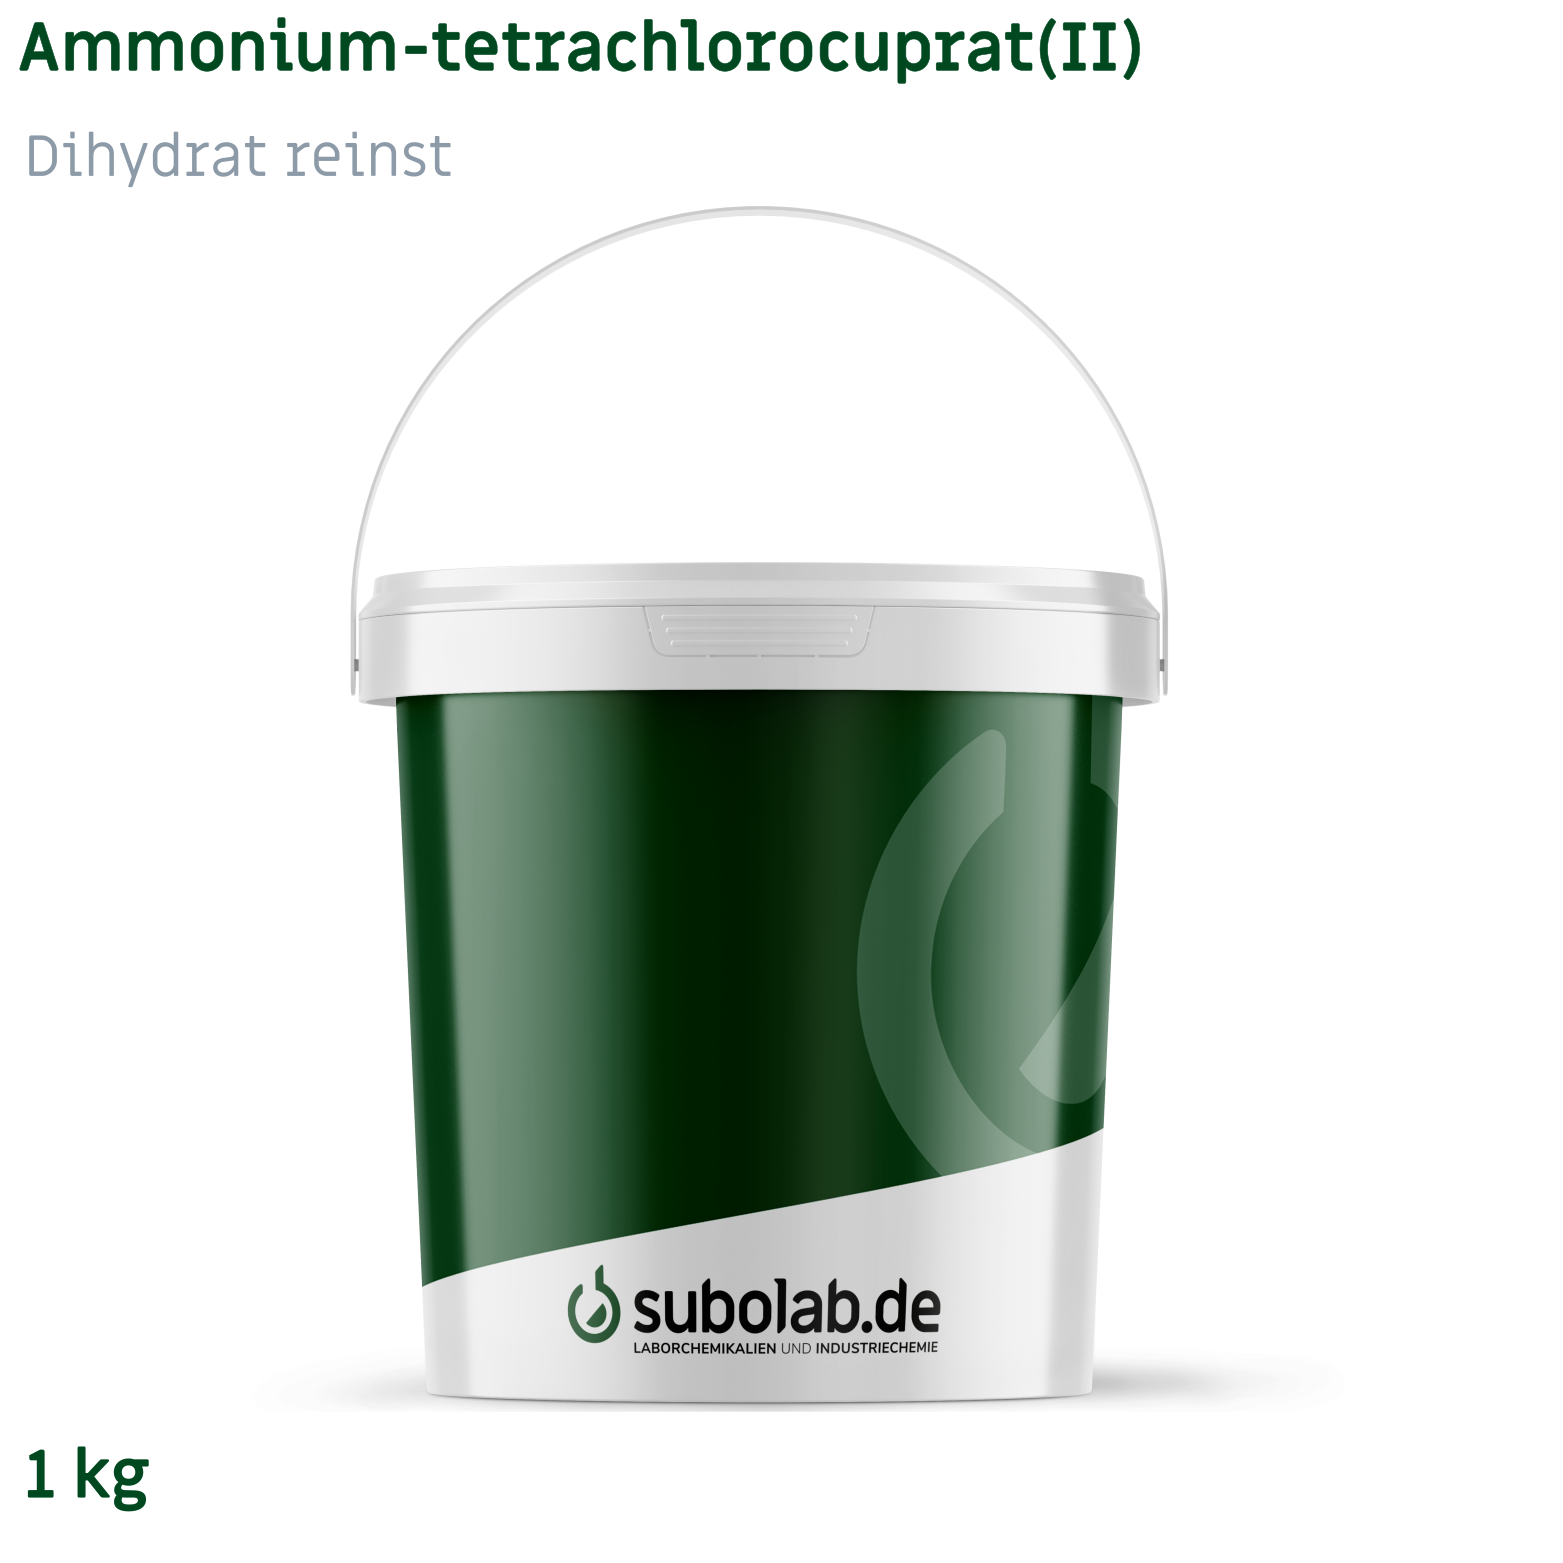 Bild von Ammonium-tetrachlorocuprat(II) - Dihydrat reinst (1 kg)